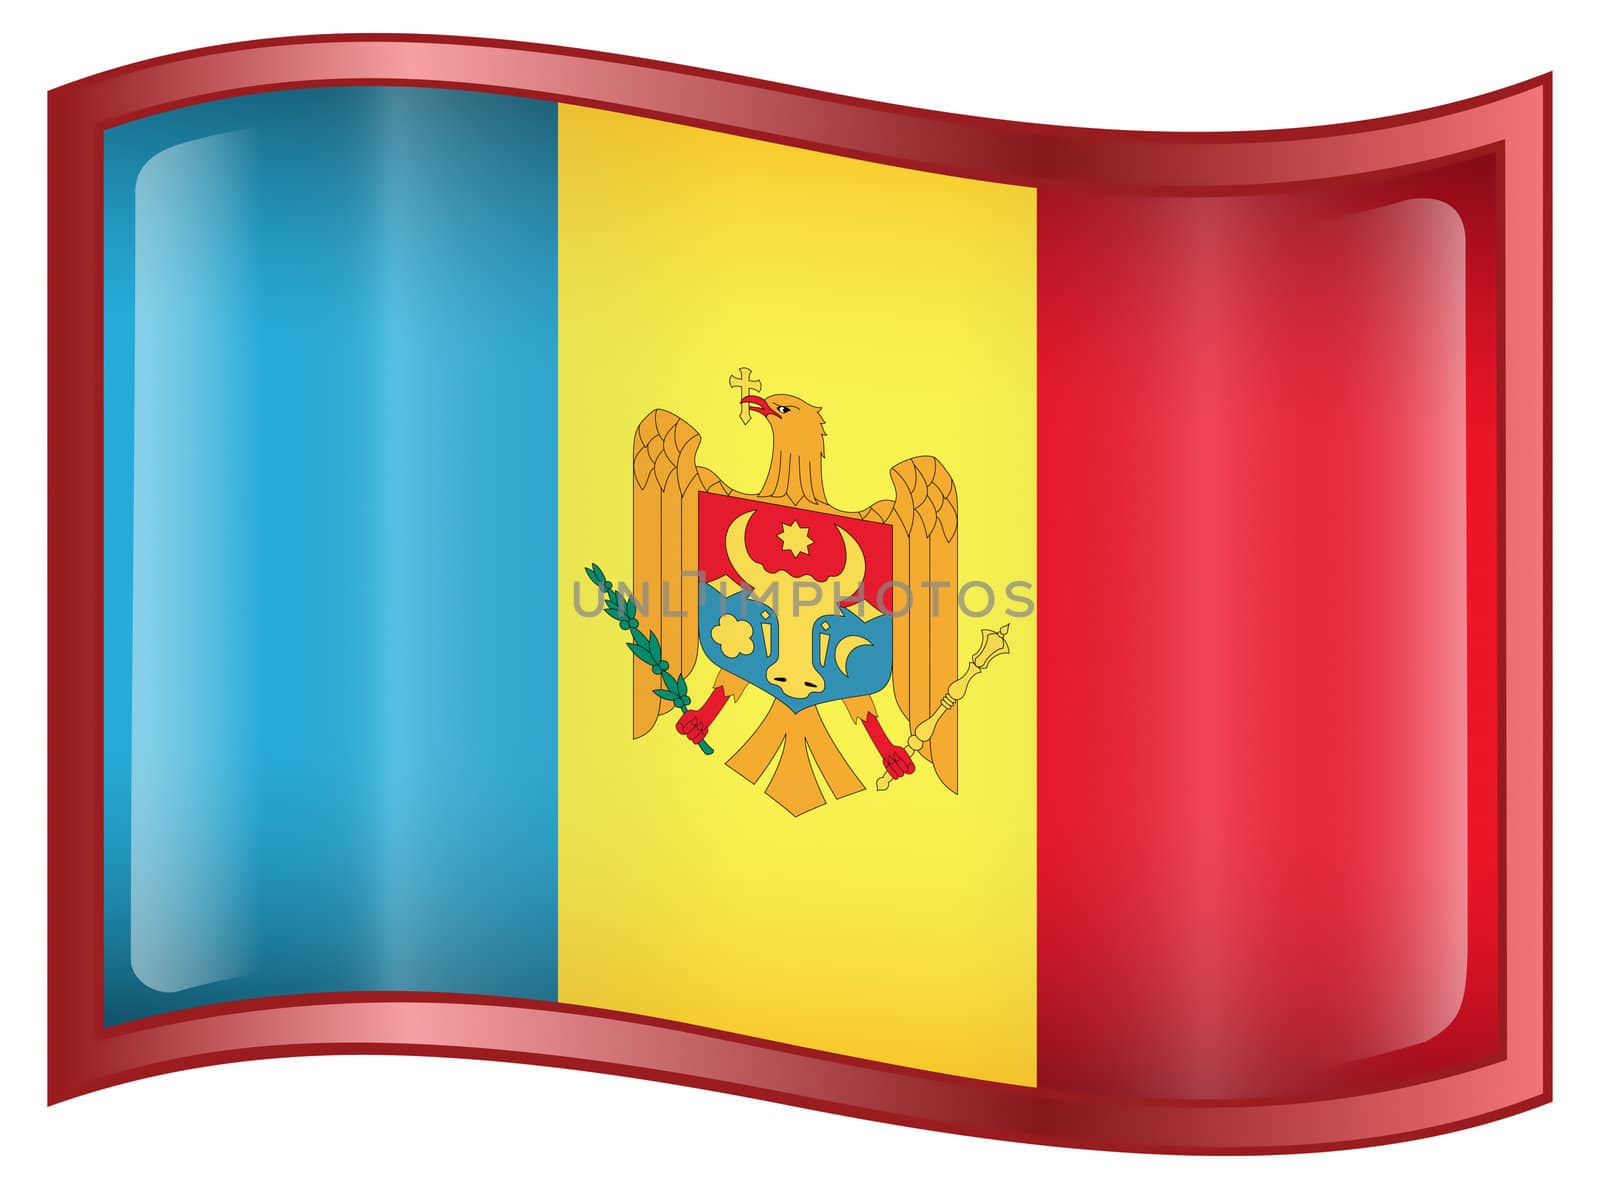 Moldova Flag icon, isolated on white background.